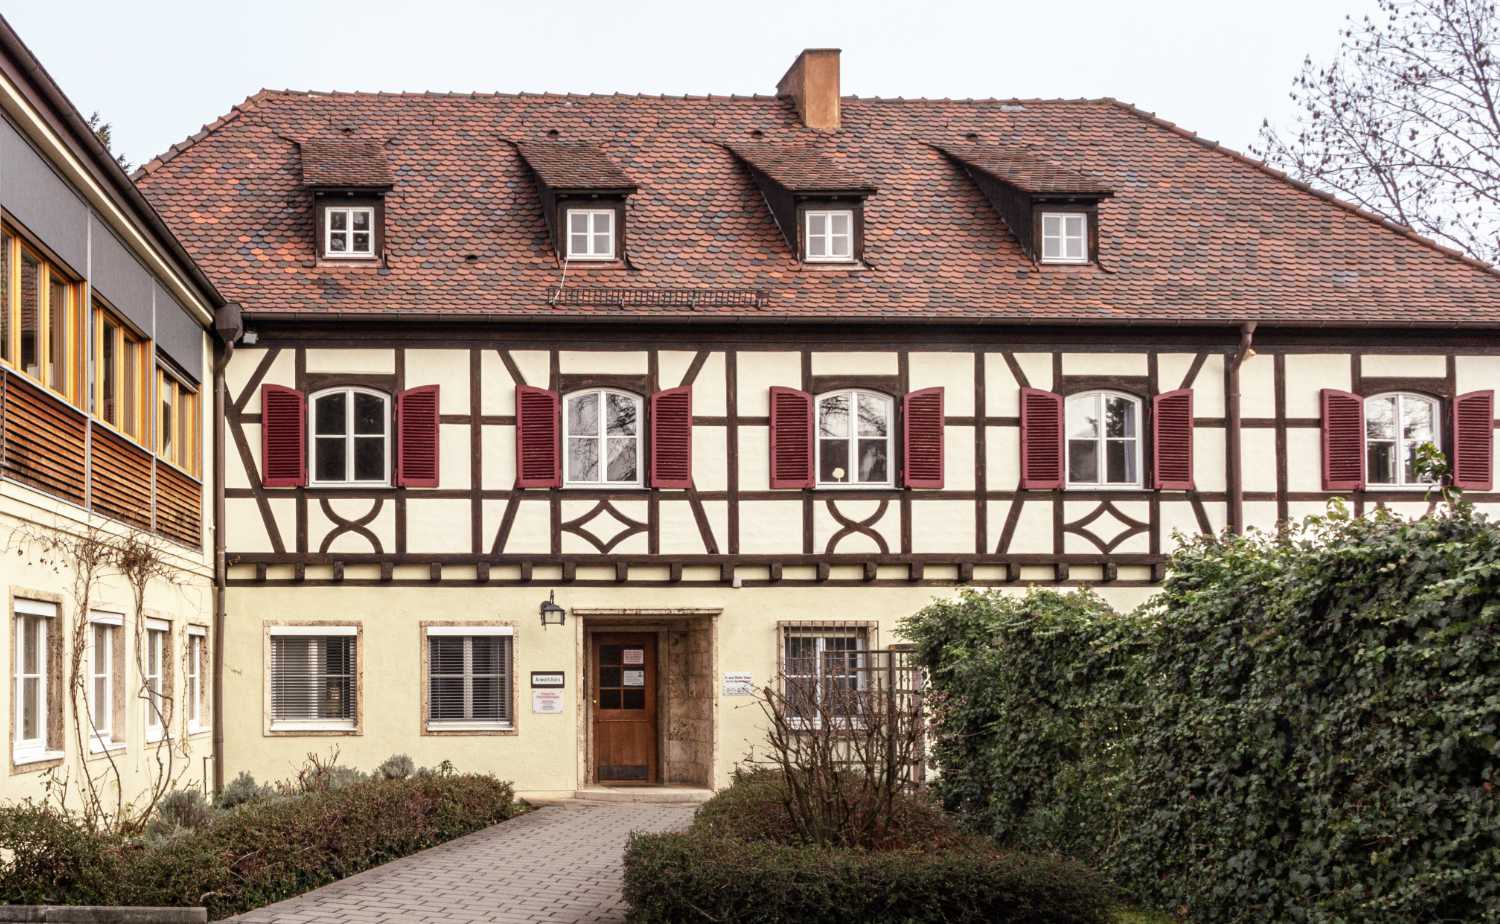 Schönes Fachwerkhaus - Ausschnitt des Gebäudes, in welchem sich die Praxis für Psychotherapie von Ulrike Promies befindet. 